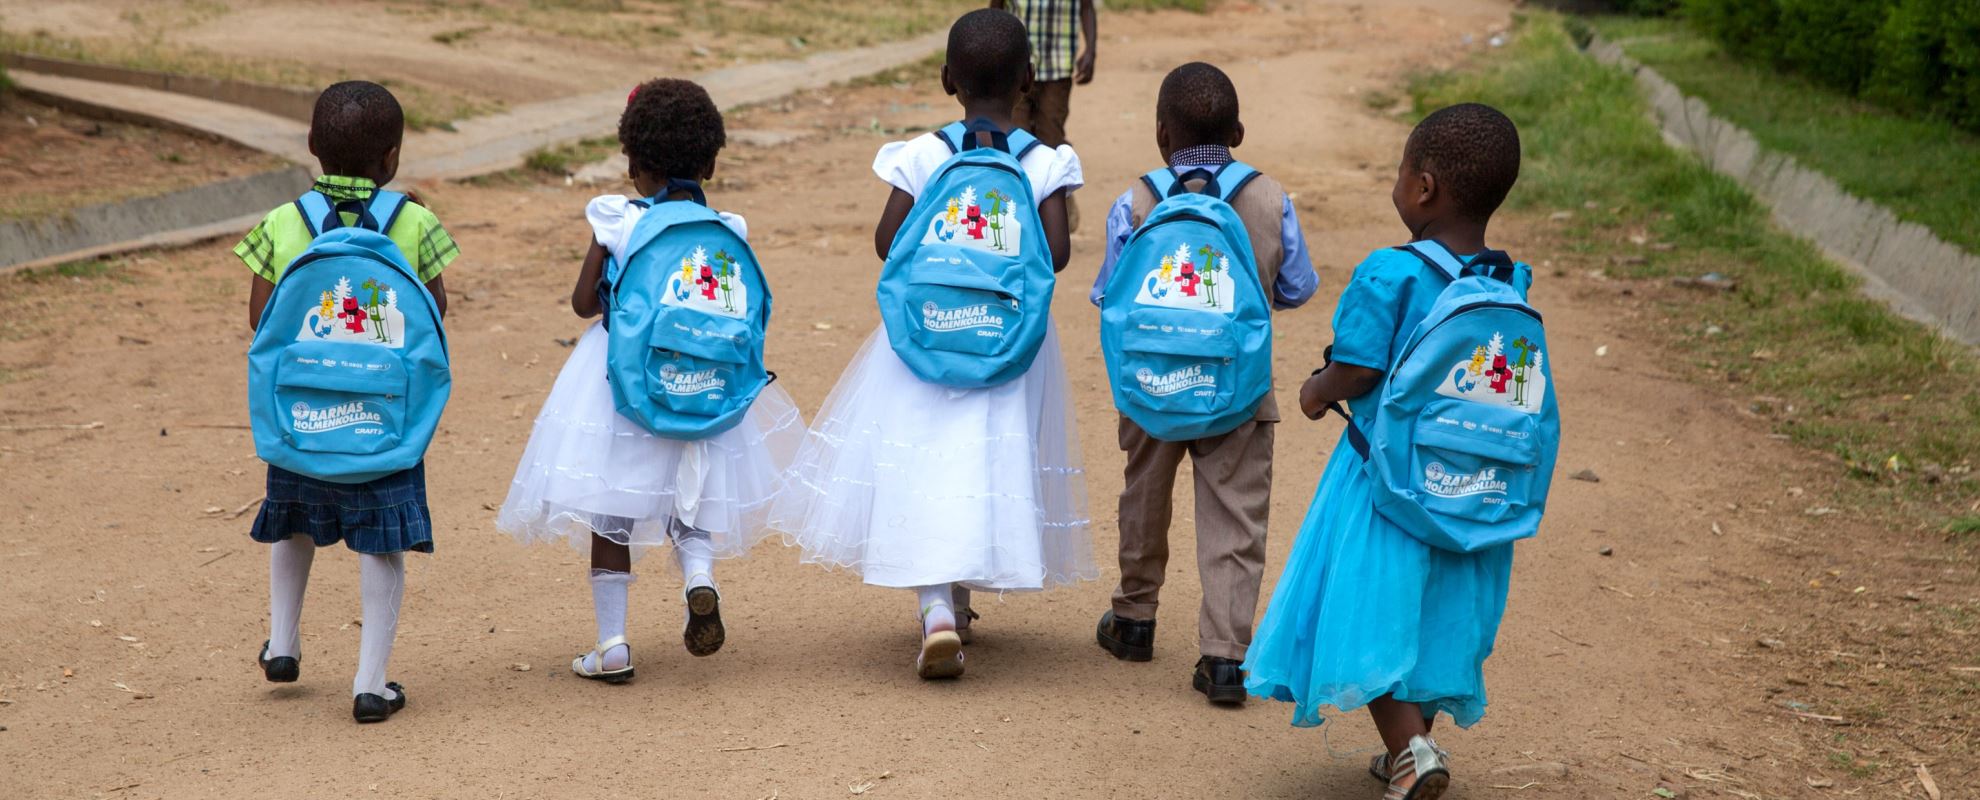 Sårbare barn gis en mulighet til å sette spor i sitt nærmiljø i Malawi. Foto: Bjørn-Owe Holmberg